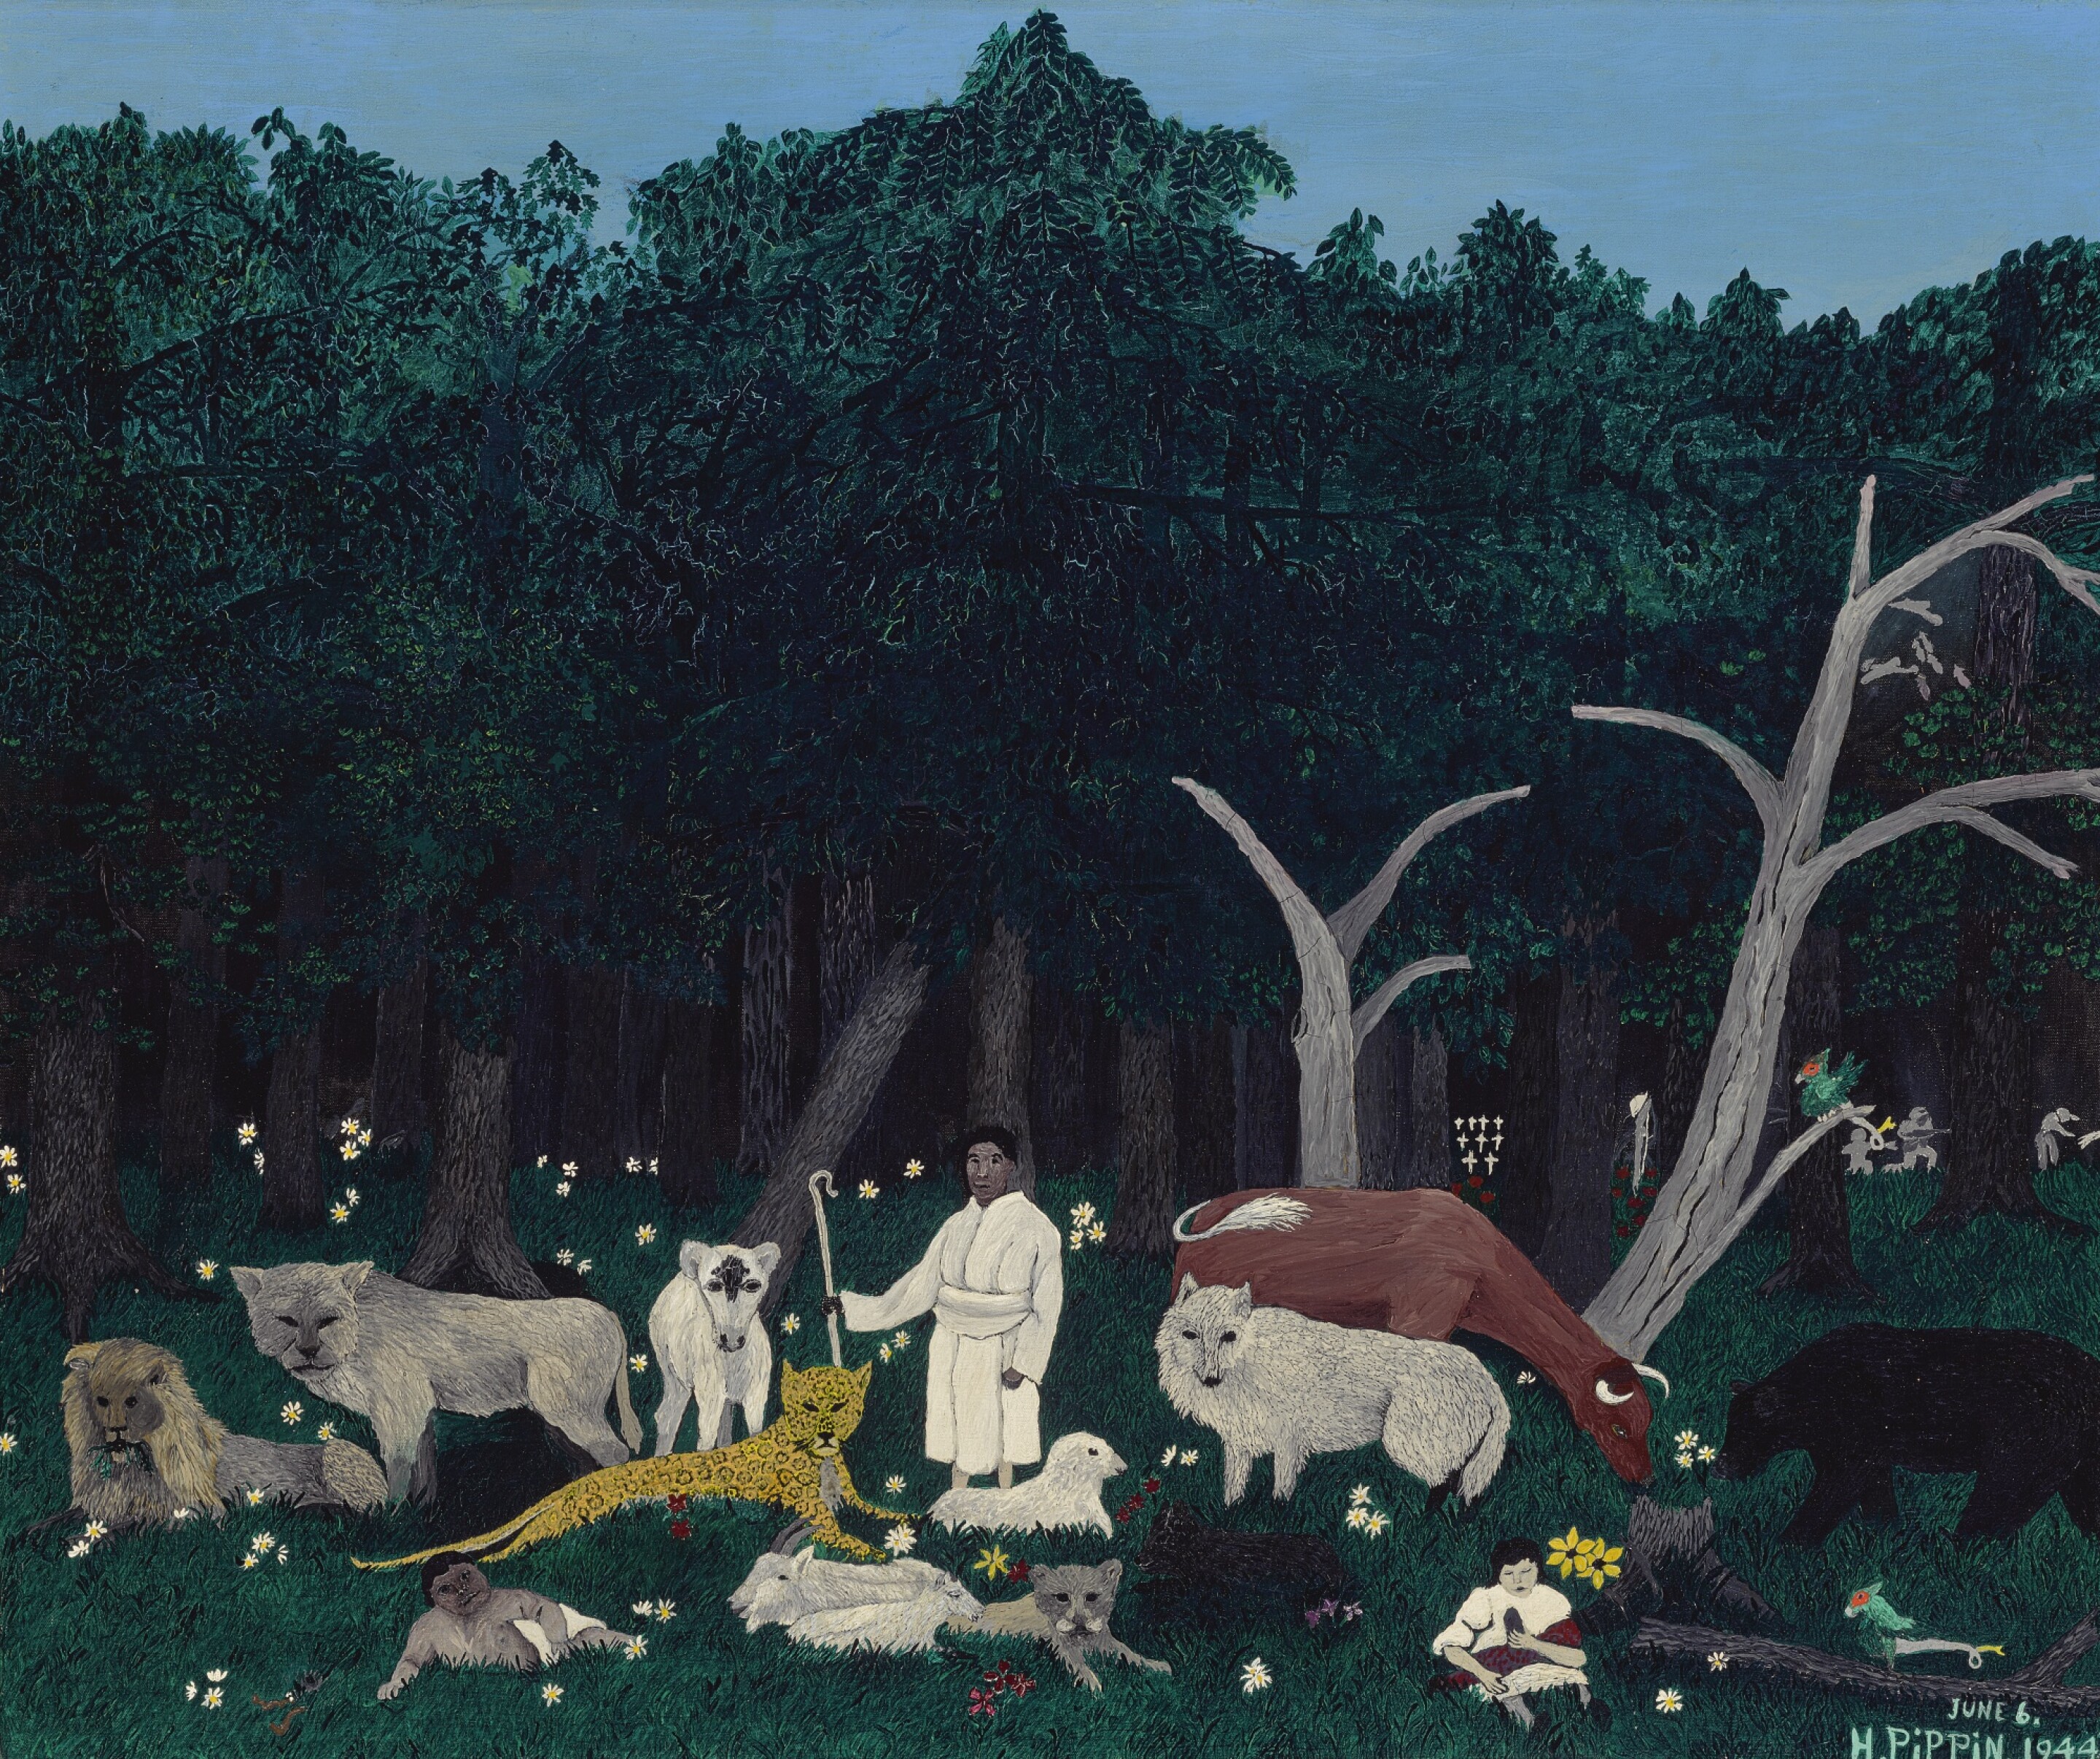 Święta góra I by Horace Pippin - 1944 r. - 77,5 x 91,4 cm 